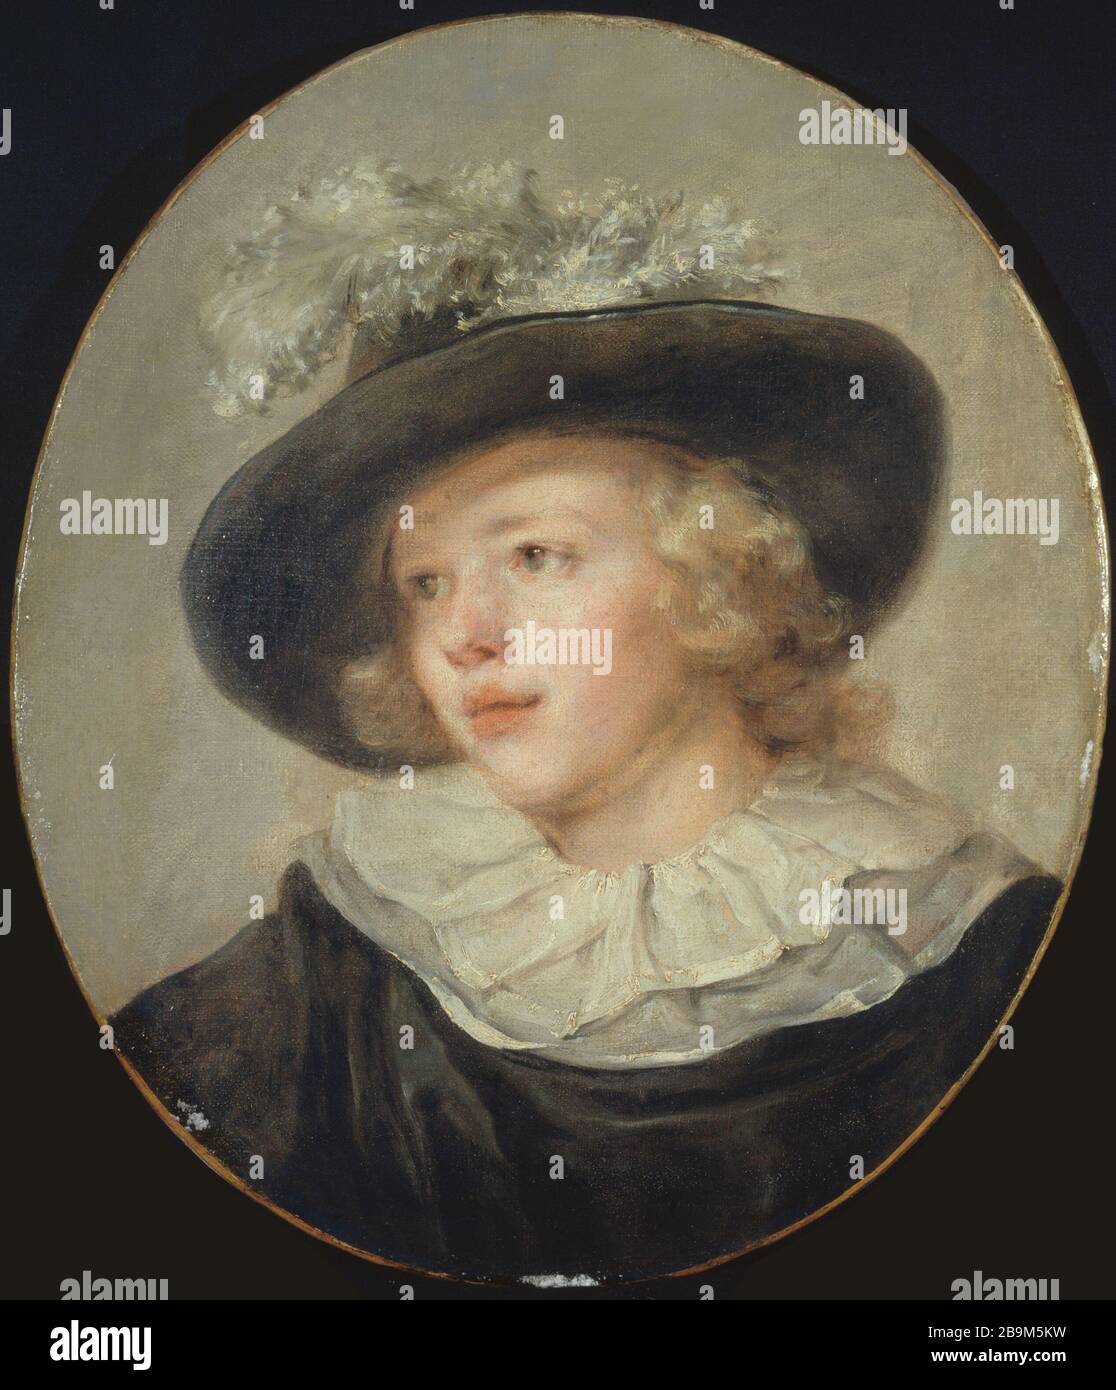 RITRATTO DI GIOVANE CON CAPPELLO DI PIUME JEAN-HONORÉ FRAGONARD (1732-1806). 'Portrait de jeune homme avec un chapeau à Plumes', entre 1785 et 1788. Huile sur toile ovale. Parigi, museo Cognacq-Jay. Foto Stock